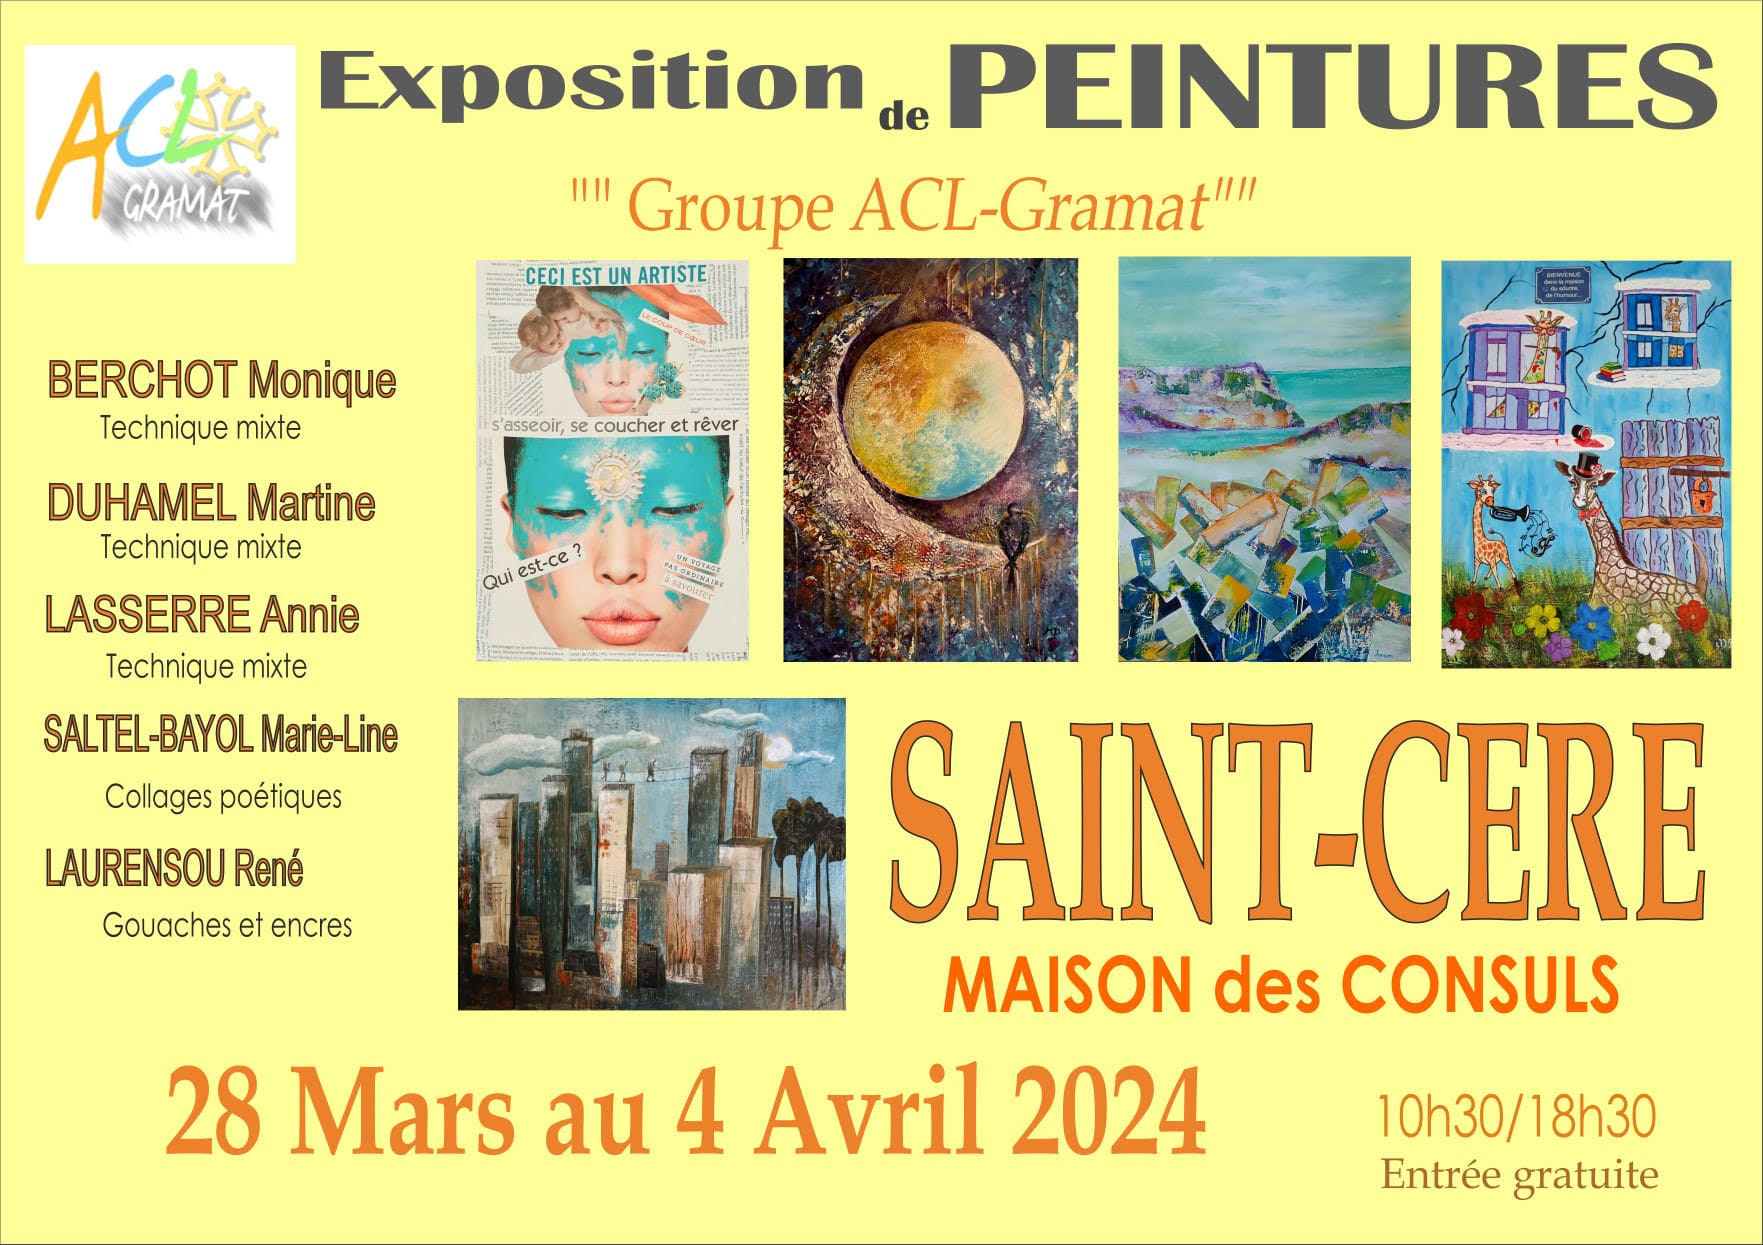 Exposition de Peintures<br />
Groupe ACL -Gramat